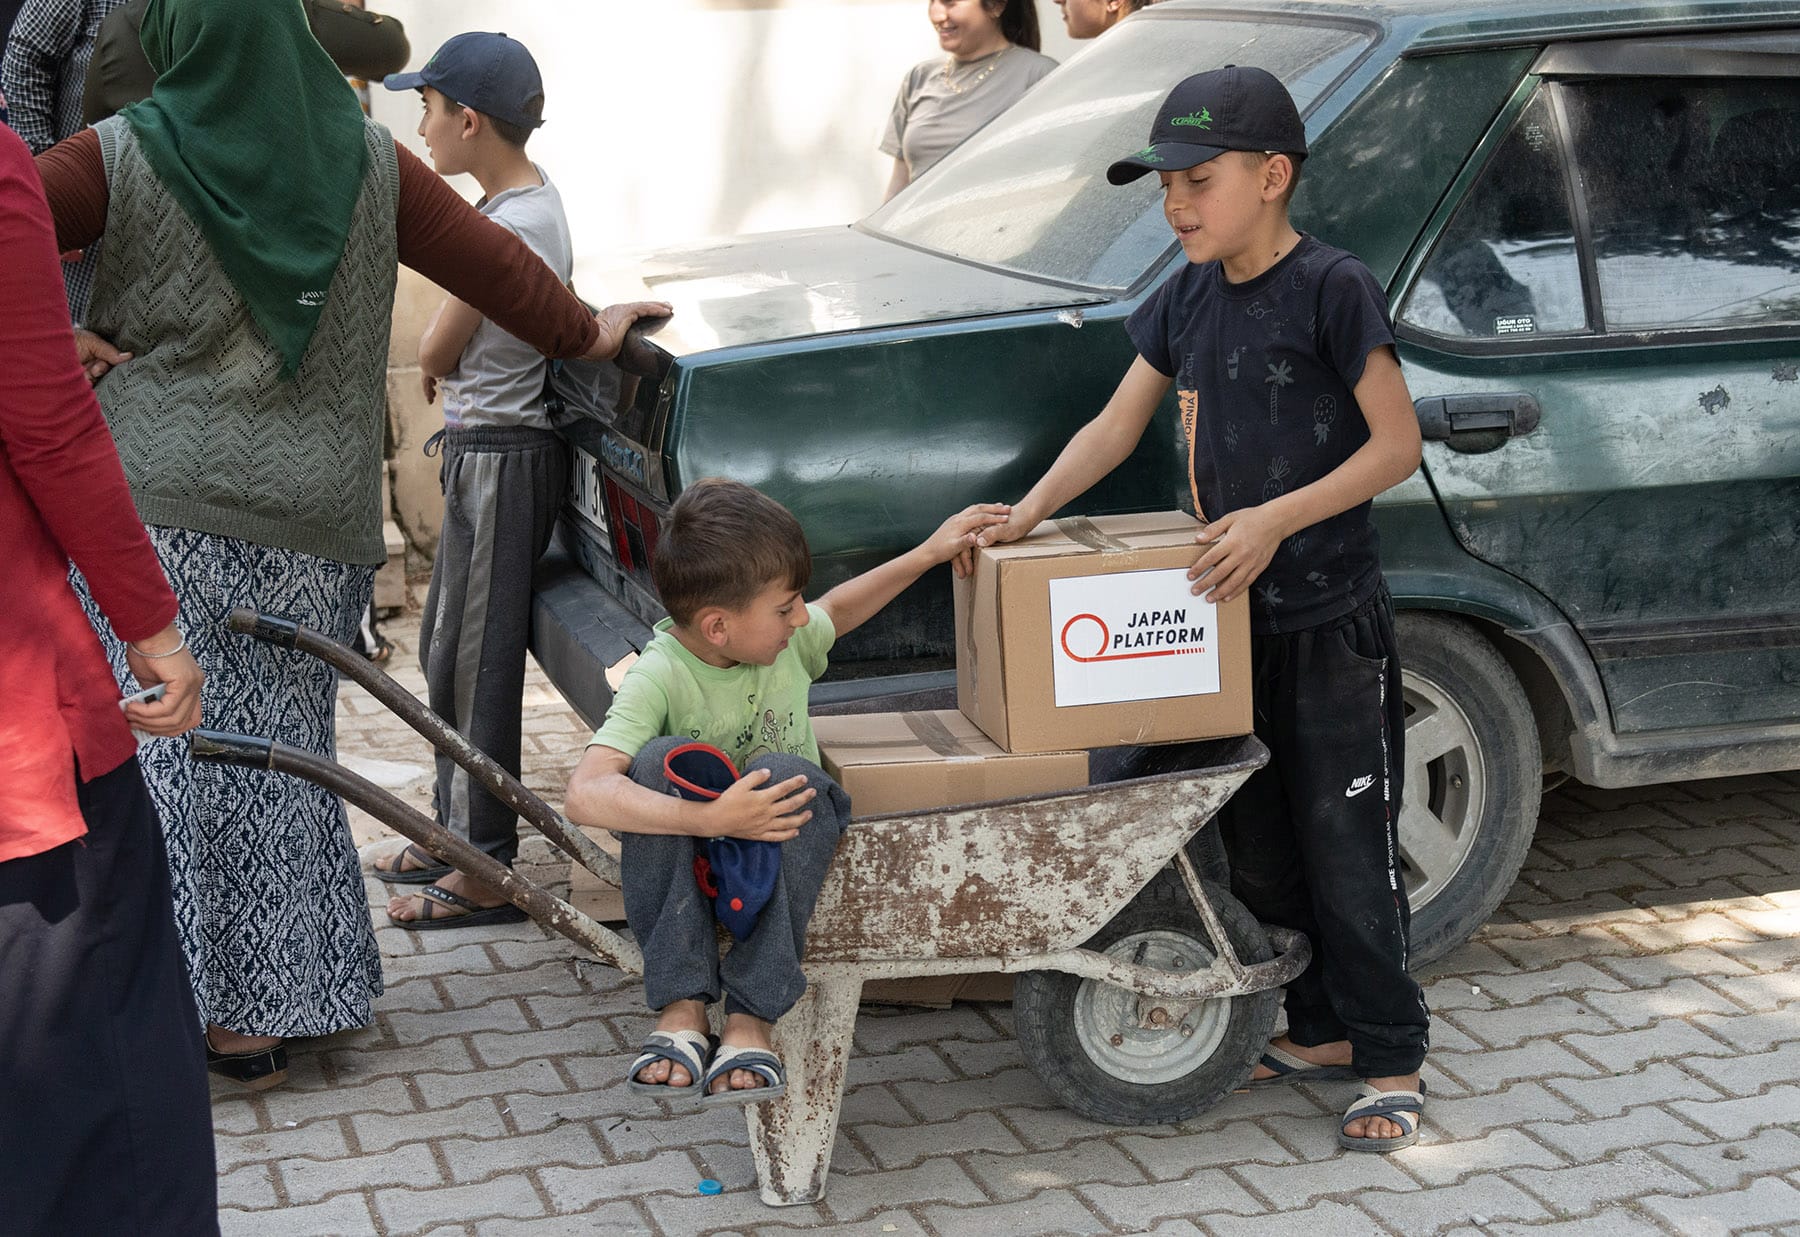 「トルコ南東部地震被災者支援2023」でピースウィンズ・ジャパンが配布した配布した食料品と生活物資の箱を一輪車に積み込む地元の子どもたち。2023年5月12日、トルコ・ハタイ州アンタキヤ市マデンボユ村 ©PeaceWinds